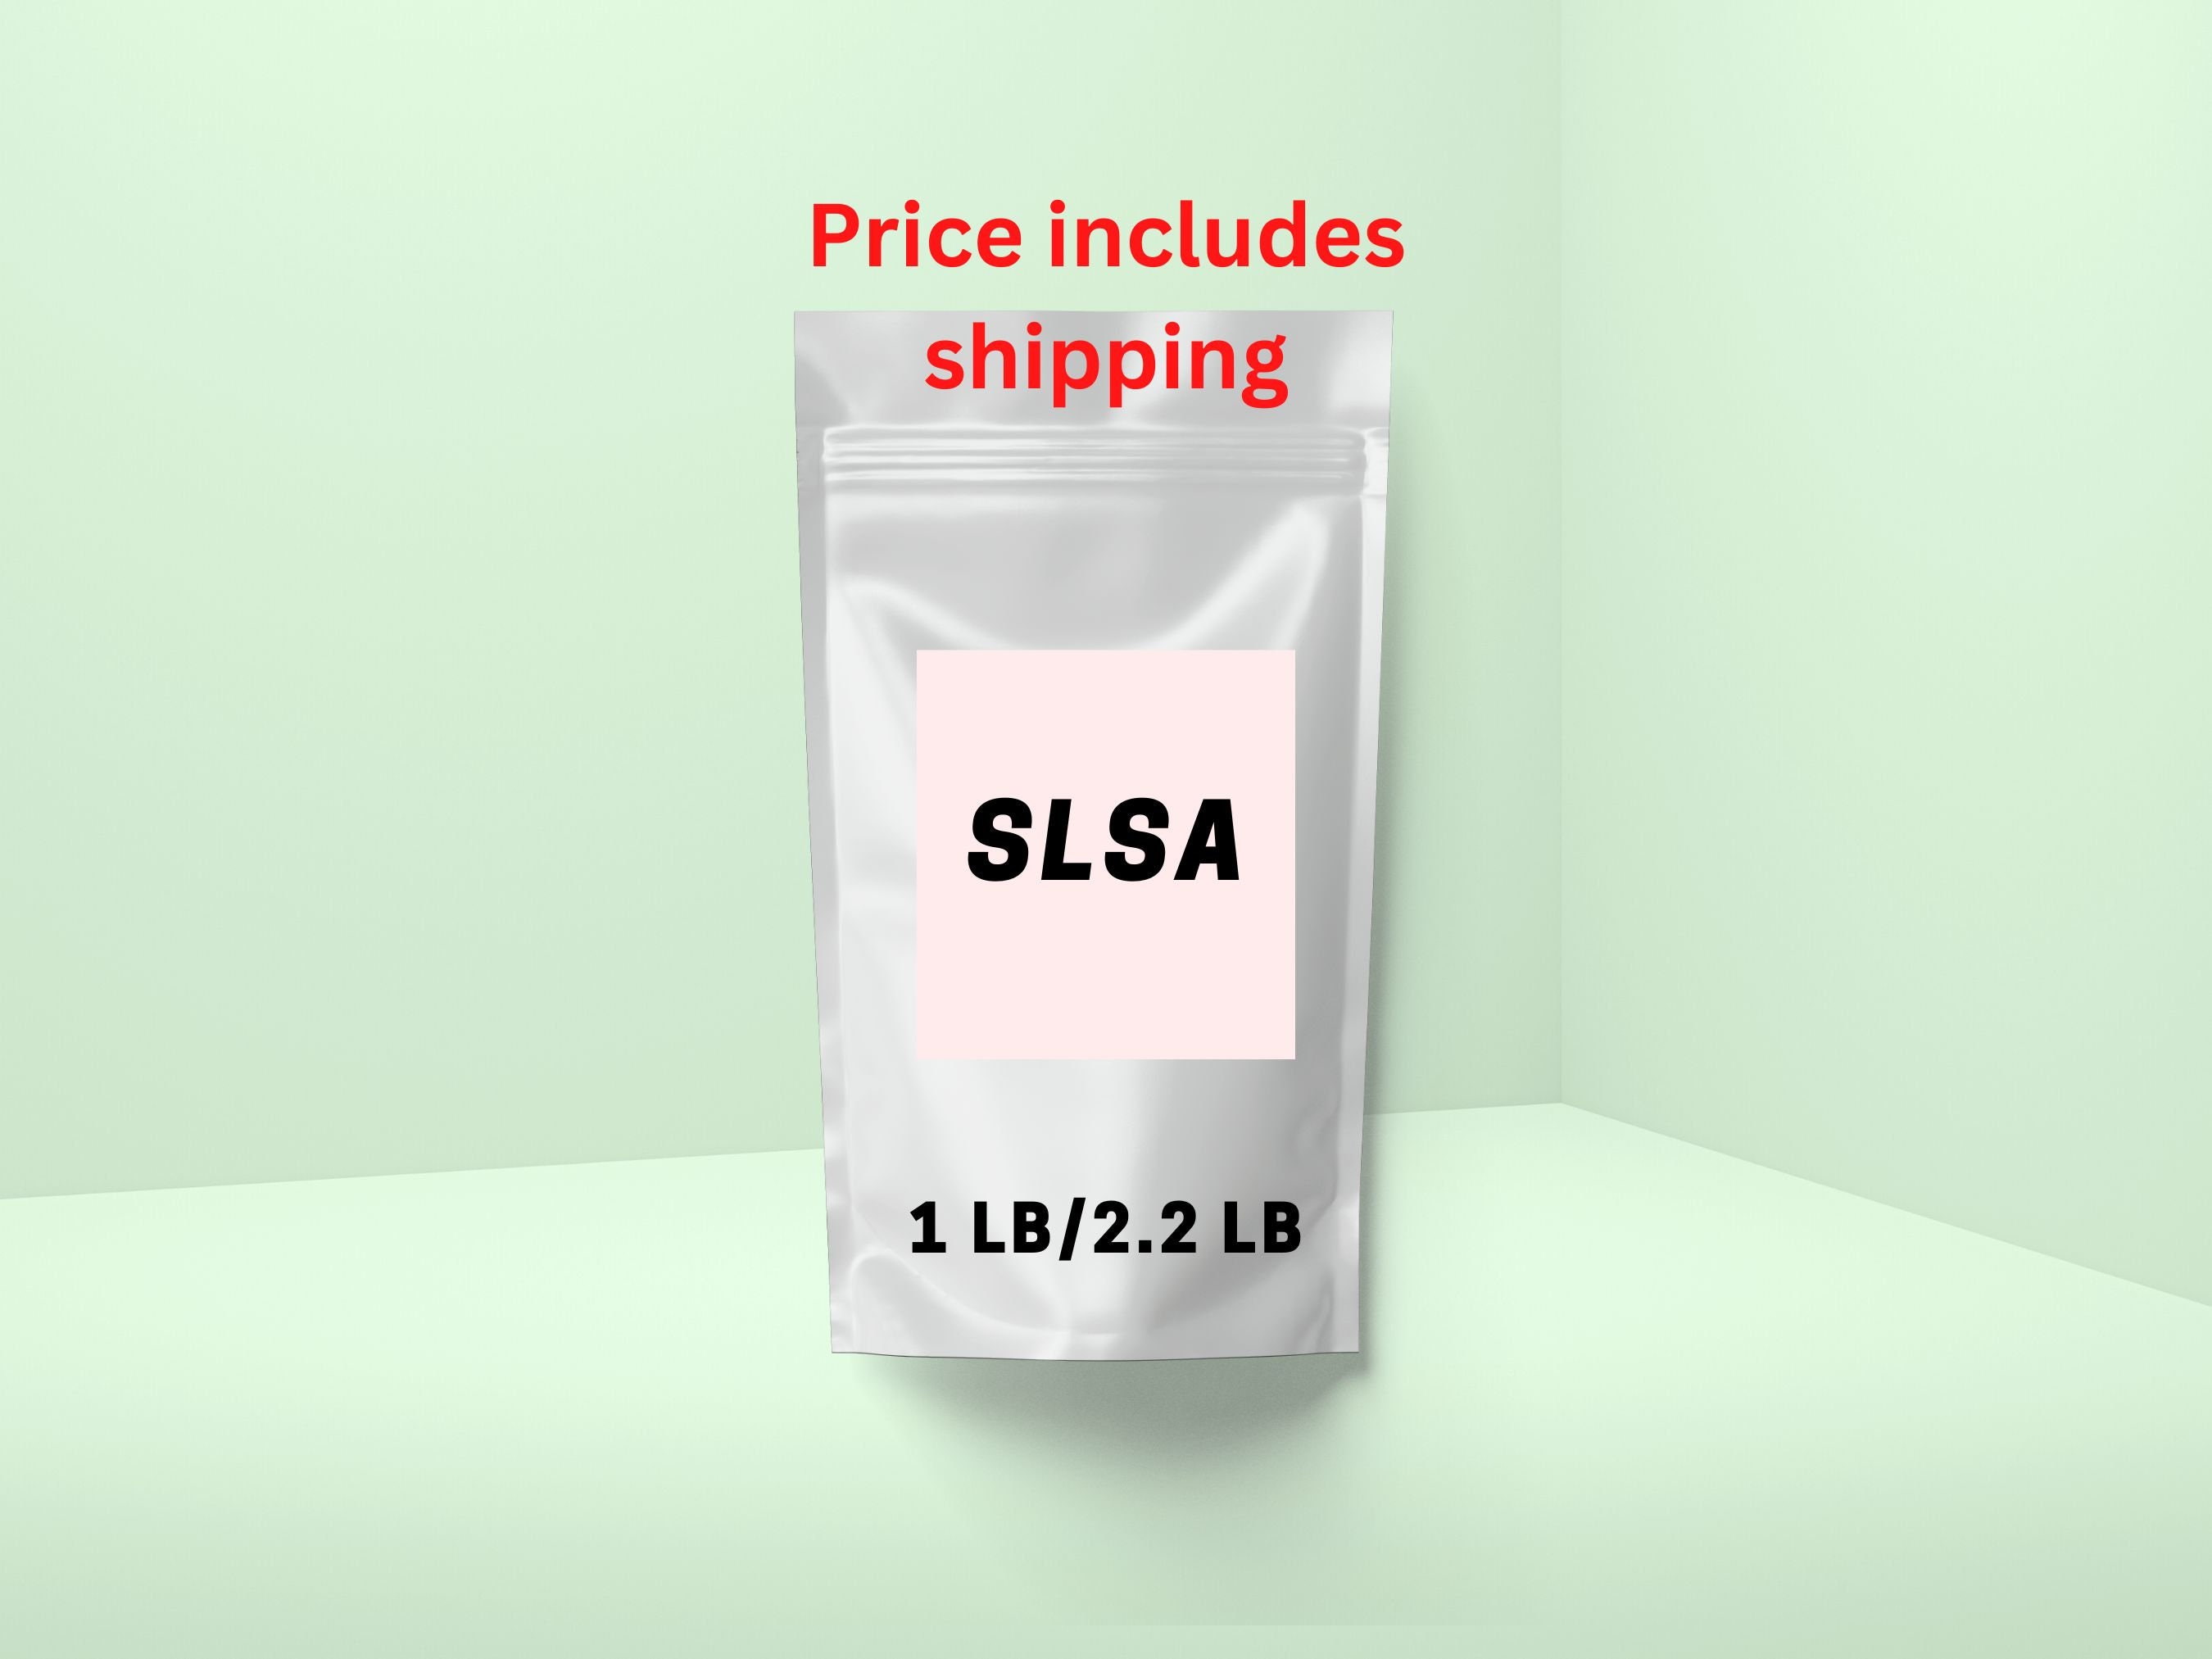 Coarse grain SLSa - 1 lb